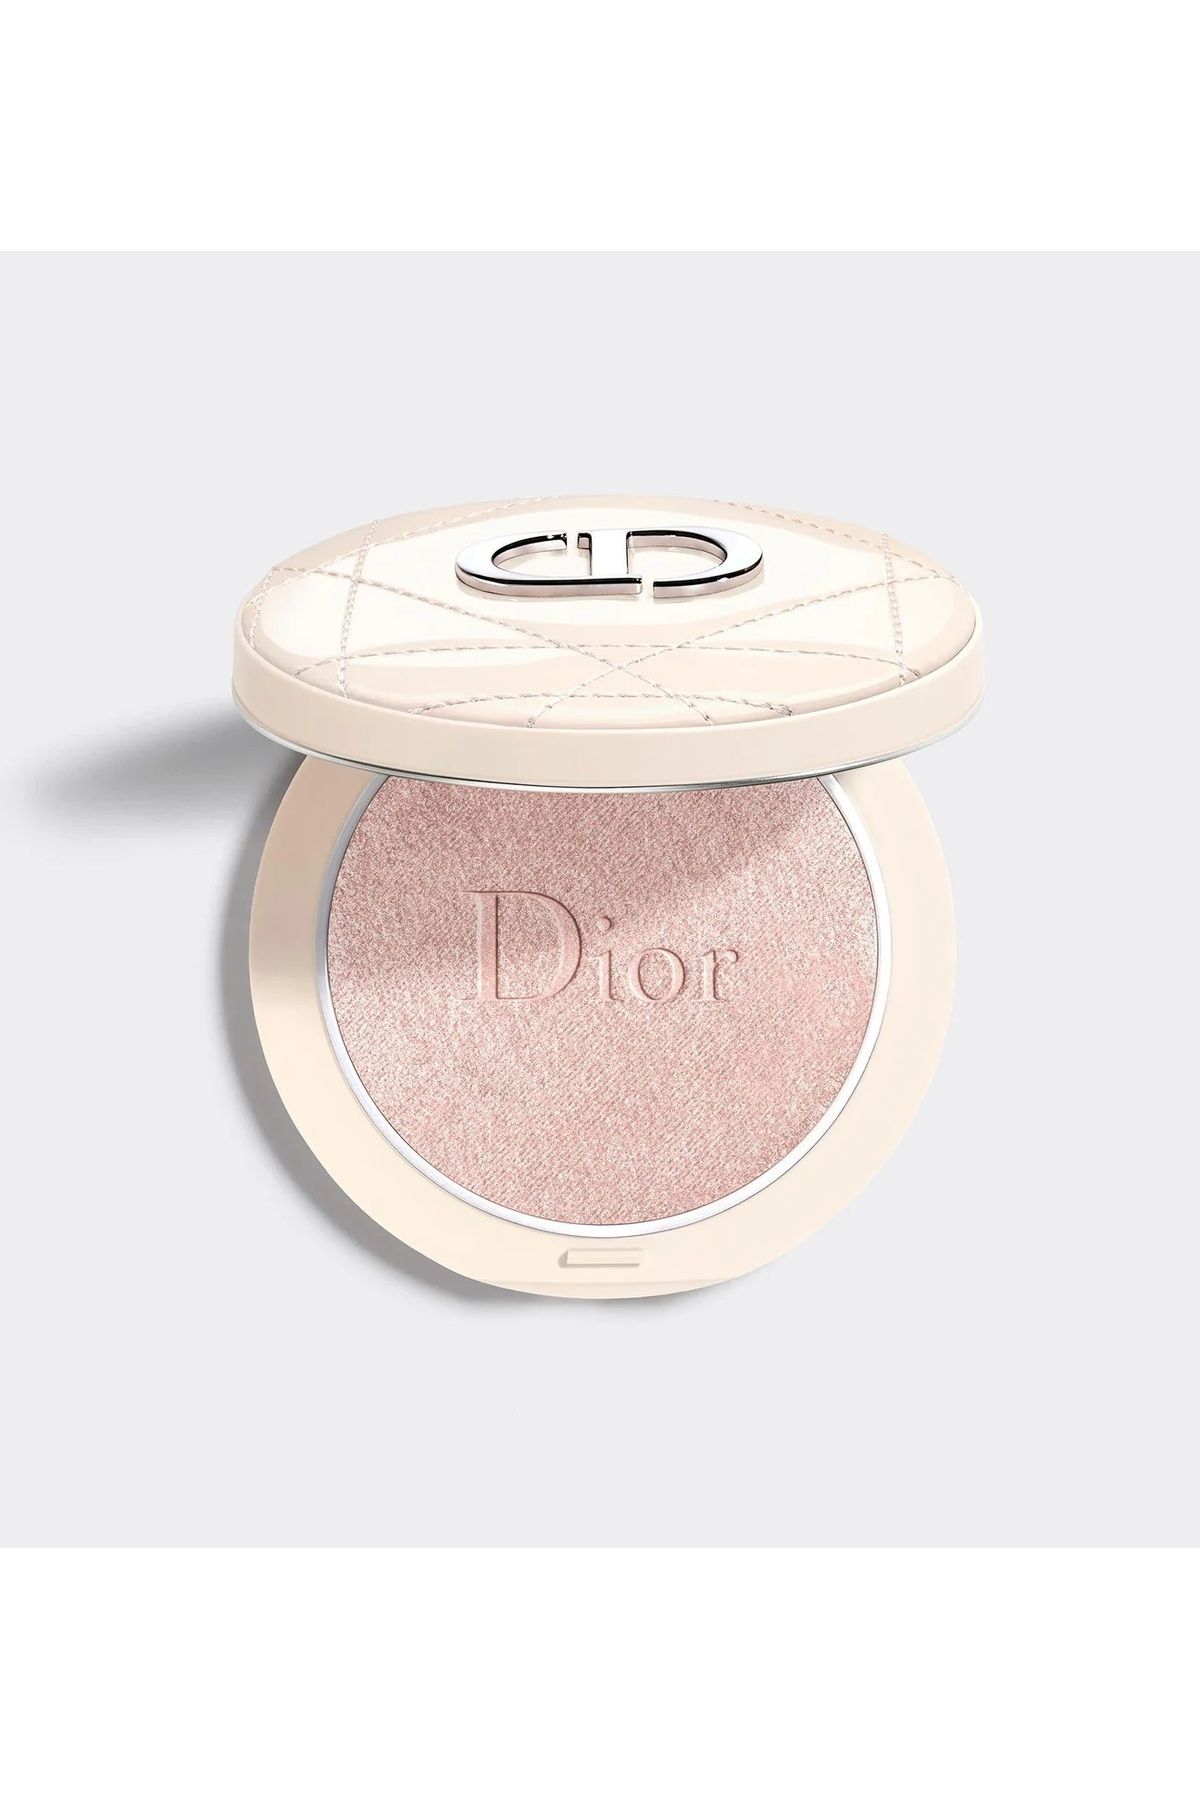 Dior Forever Couture Luminizer Highlighter - Nemlendirici Doğal Pigmentli Işıltılı Aydınlatıcı Pudra 6G